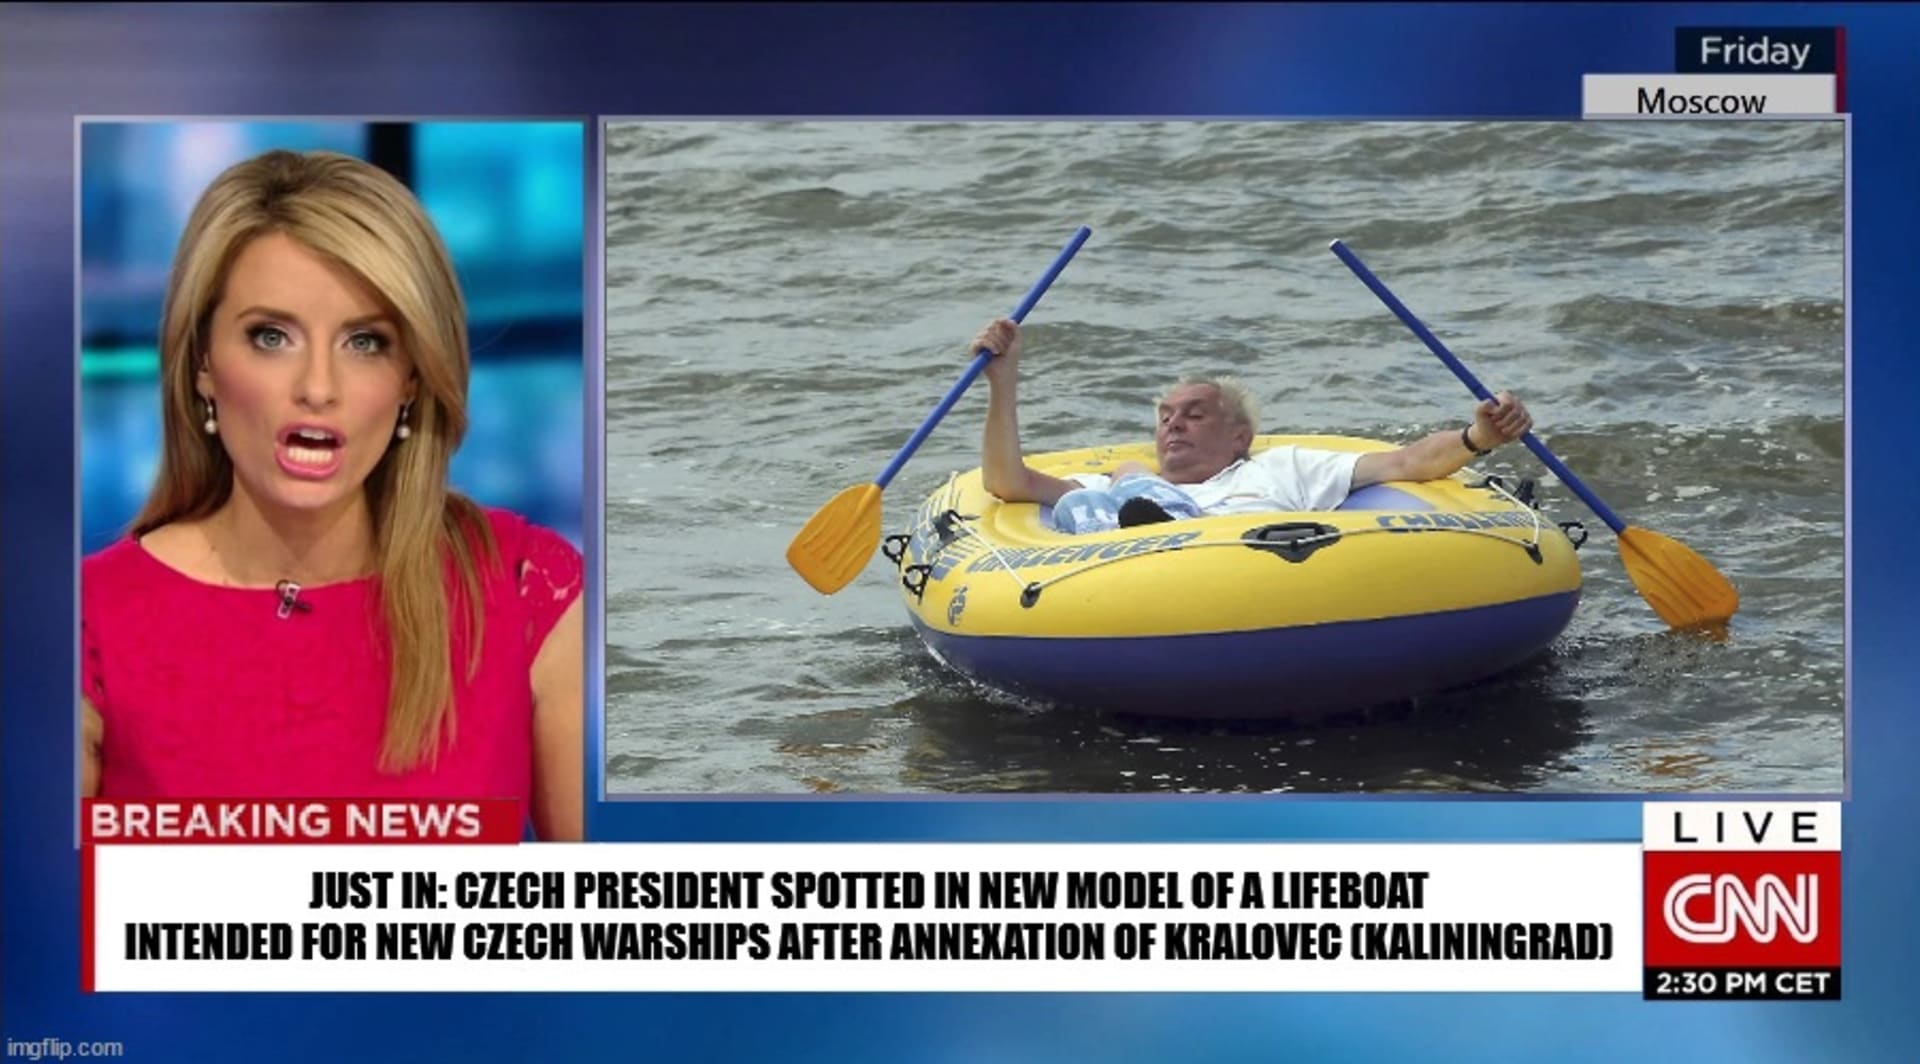 Česká hlava státu má v oblibě každý rok vyrazit na jezero v dnes už ikonickém žlutém člunu Challenger. Že by šlo o nový model záchranných člunů pro českou flotilu kotvící v Královci?